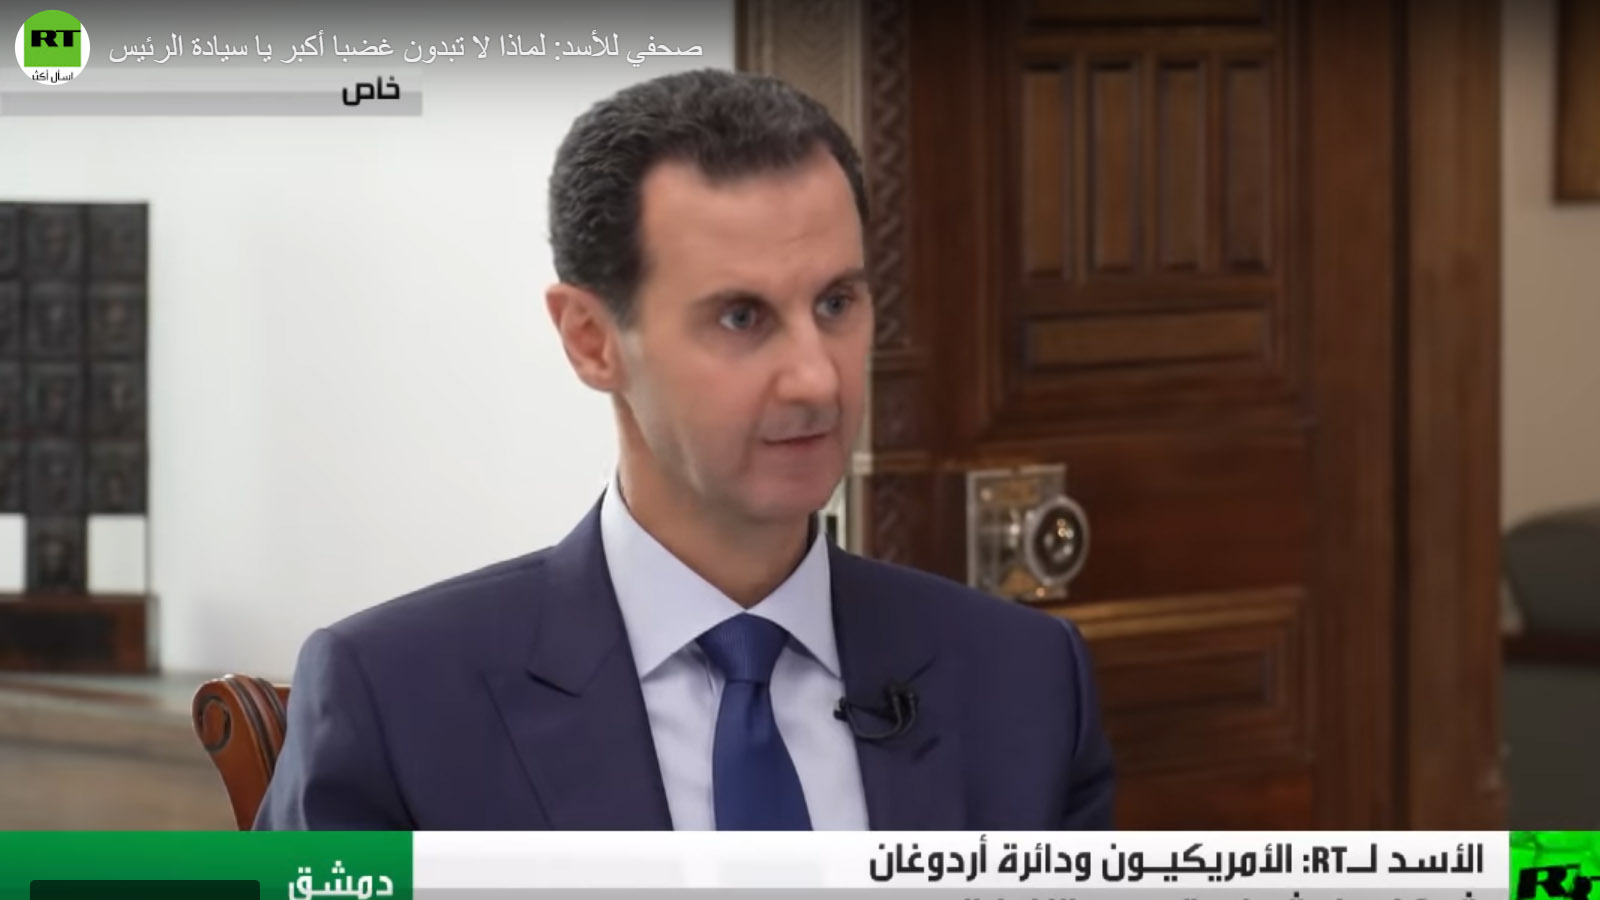 بشار الأسد: "لا تعذيب في سوريا"!